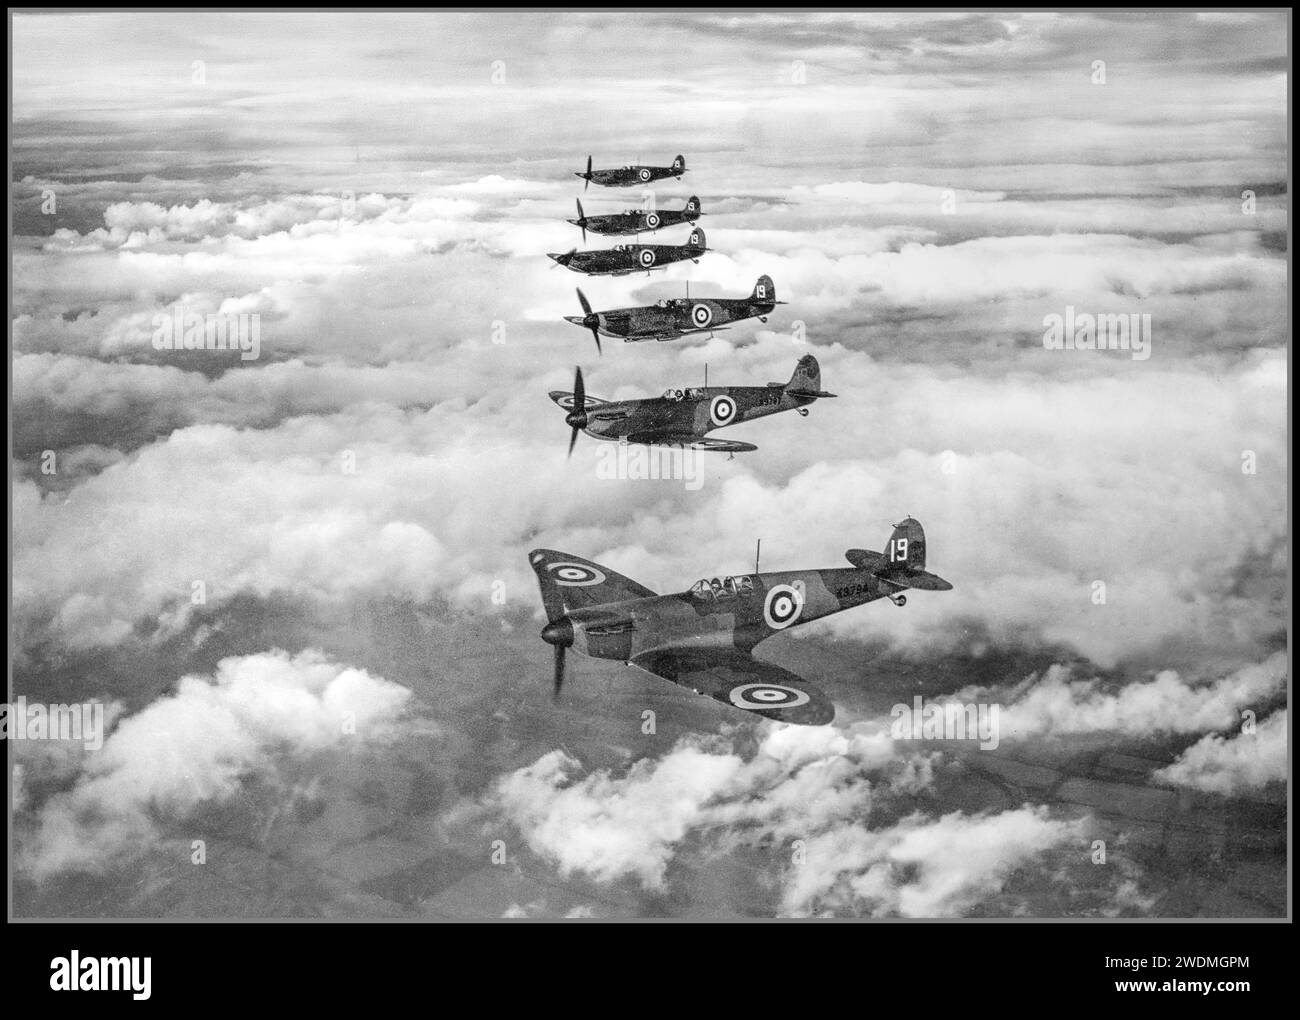 BATTLE OF BRITAIN 1939 Spitfire Spitfire Kampfflugzeuge fliegen in Formation von der 19 Squadron, die in Duxford in Cambs stationiert ist, und fliegen in Stufenformation. Schlacht von Großbritannien, RAF Fighter Command. Douglas Bader wurde im Februar 1940 in das Geschwader versetzt. Im Mai und Juni 1940 stellte das Geschwader während der Truppenevakuierung des Zweiten Weltkriegs Luftschutz über Dünkirchen Stränden zur Verfügung Stockfoto